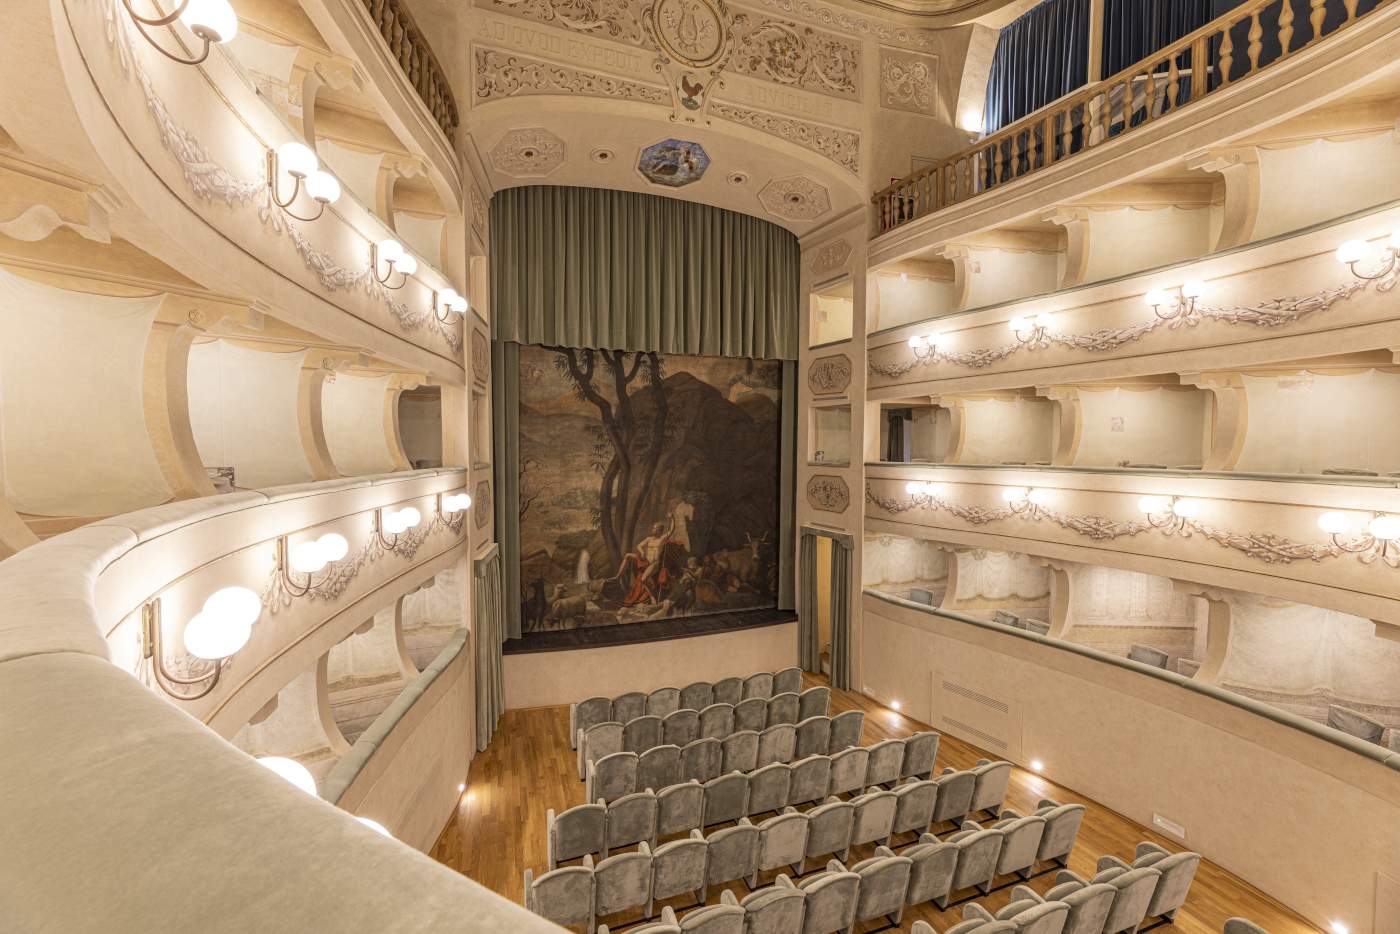 Portoferraio, das Theater von Napoleon wird nach der Restaurierung wieder eröffnet. Wandmalereien in den Logen sind aufgetaucht